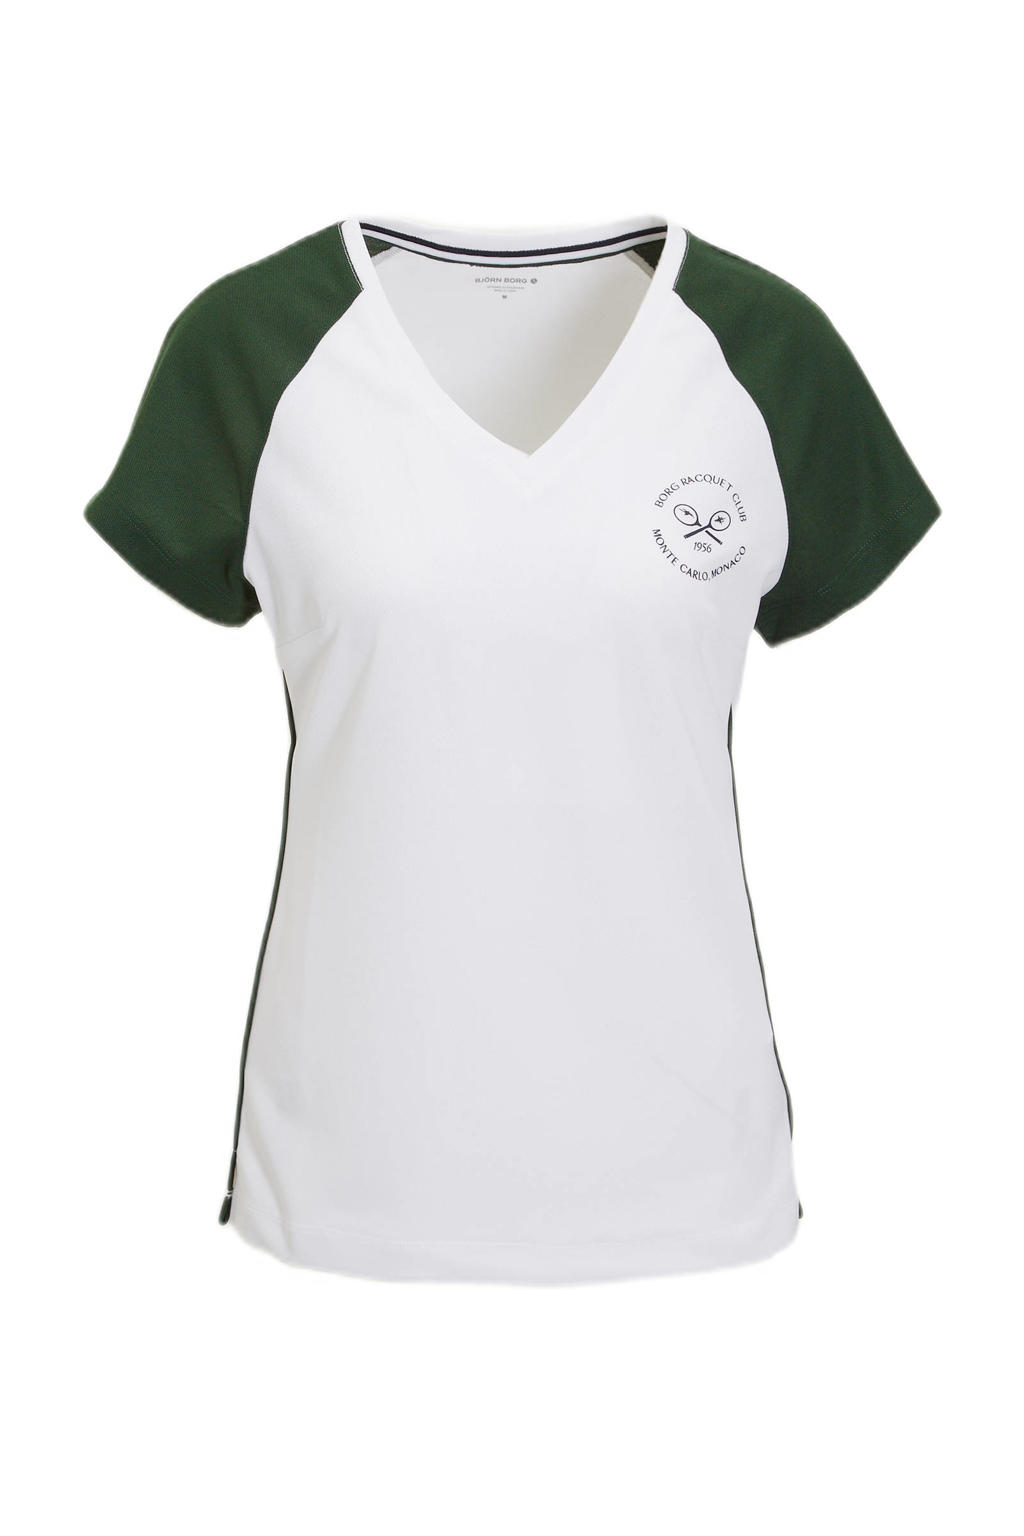 Wit en donkergroene dames Björn Borg sport T-shirt Ace van gerecycled polyester met logo dessin, korte mouwen en V-hals